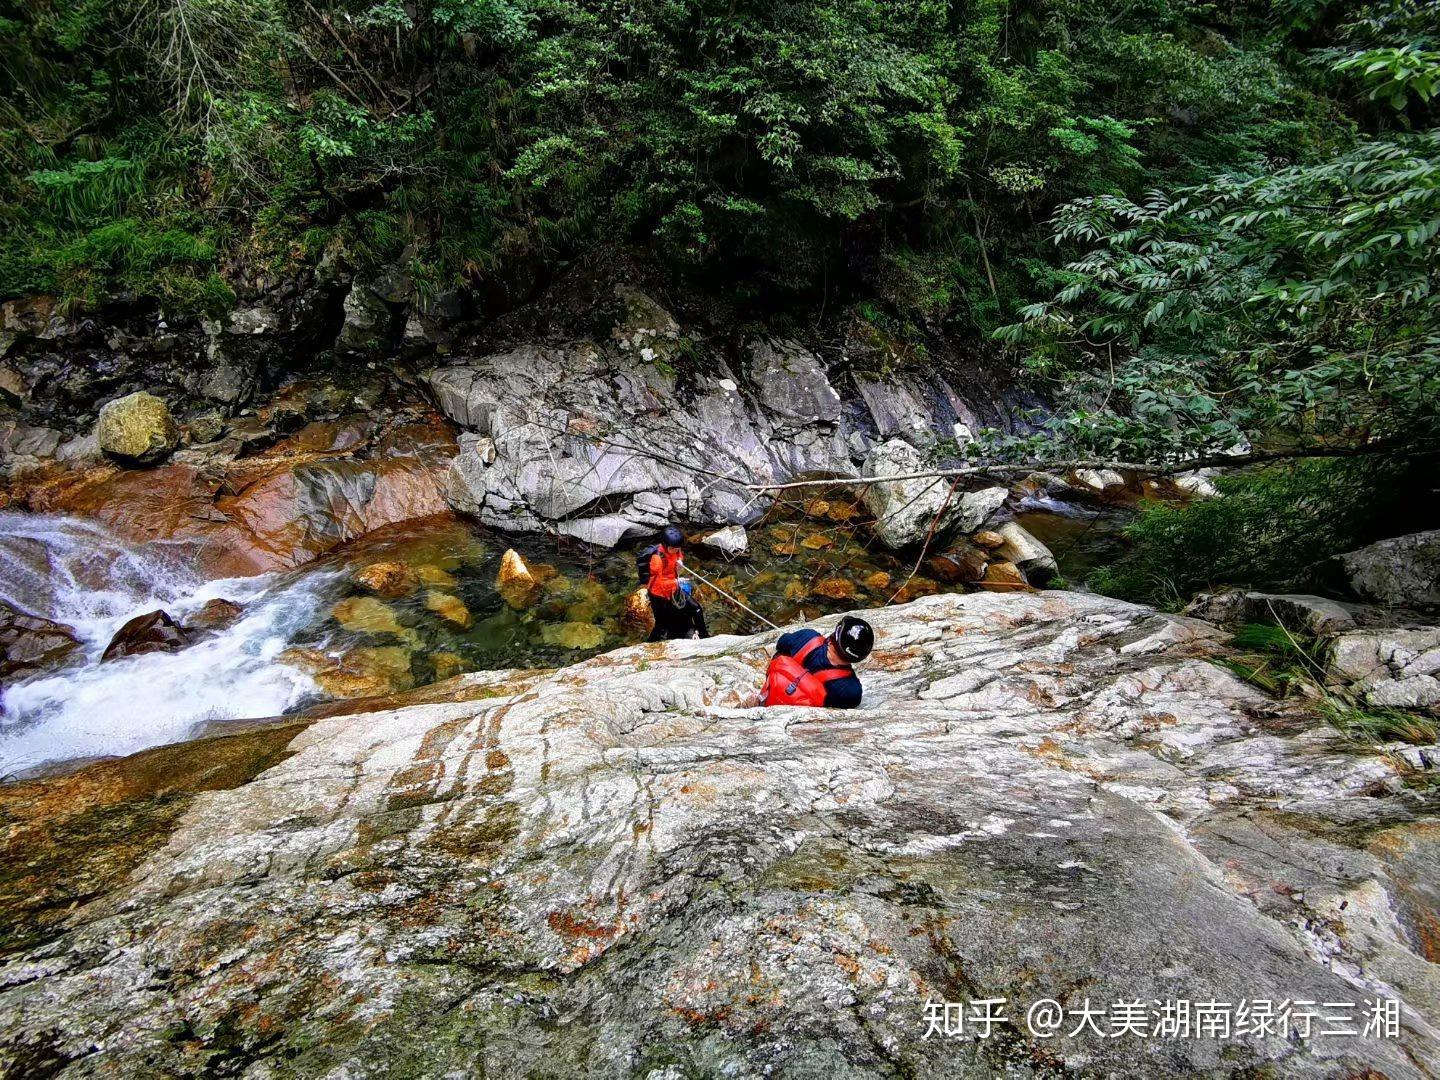 广州从化避暑指南：8个溯溪玩水打卡点 - 哔哩哔哩